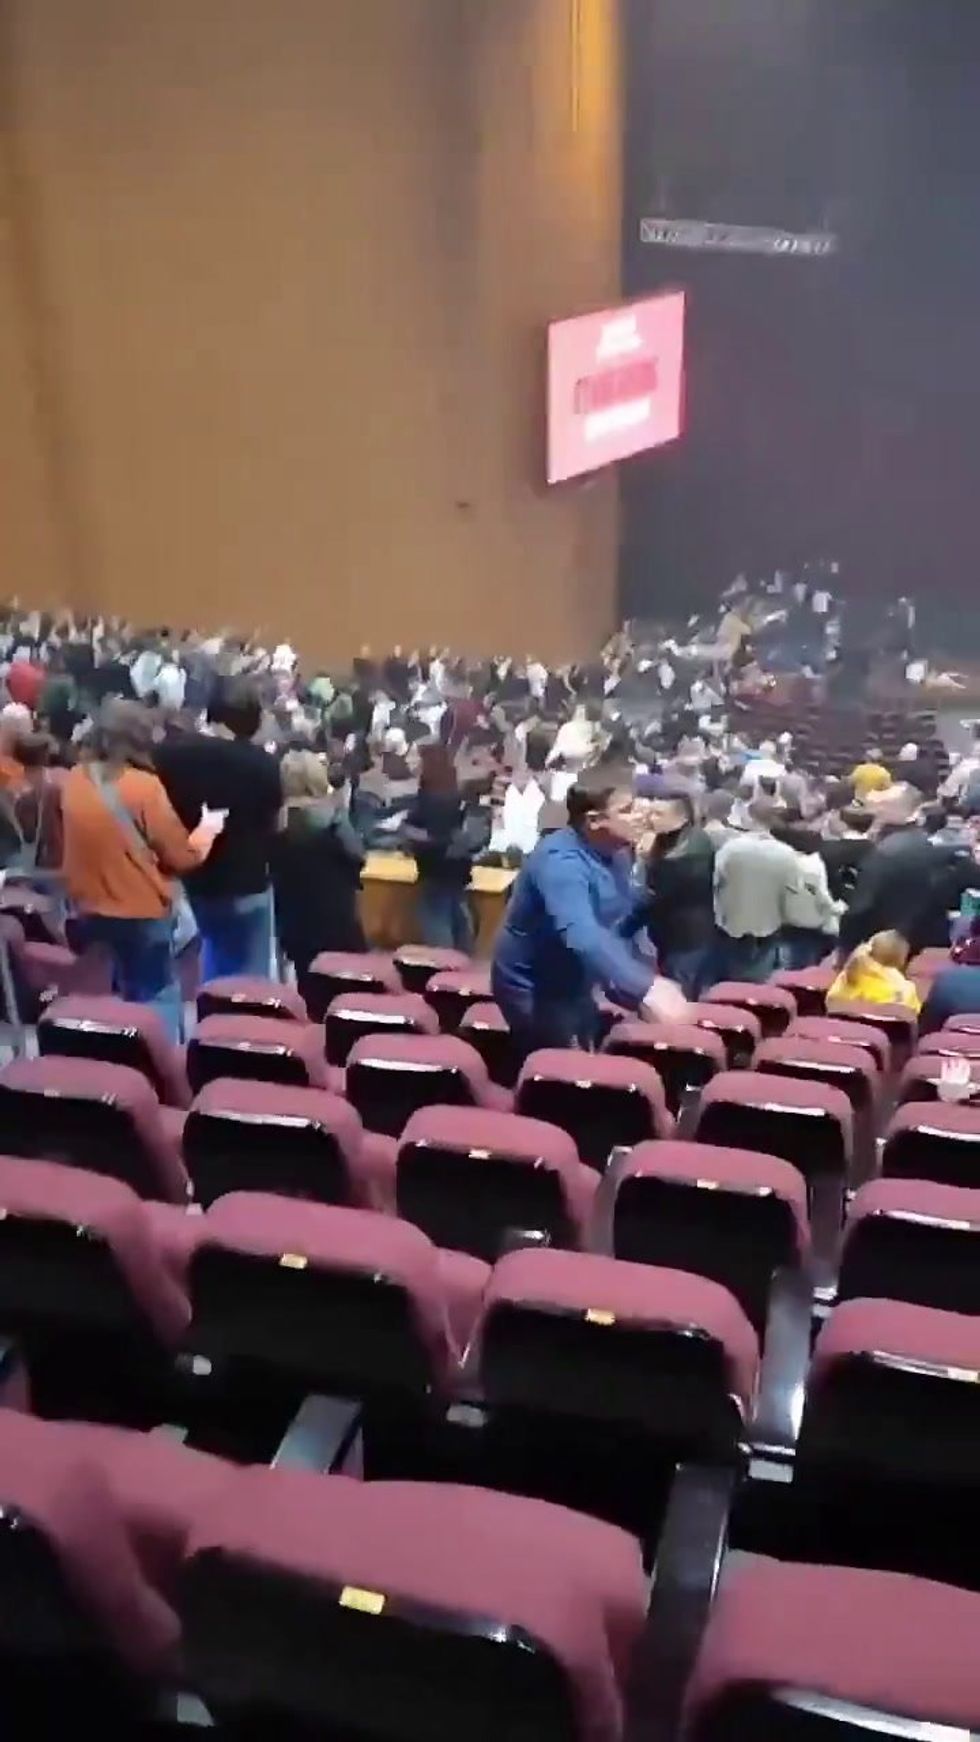 Mosca: attentato in una sala da concerti | il video degli spari